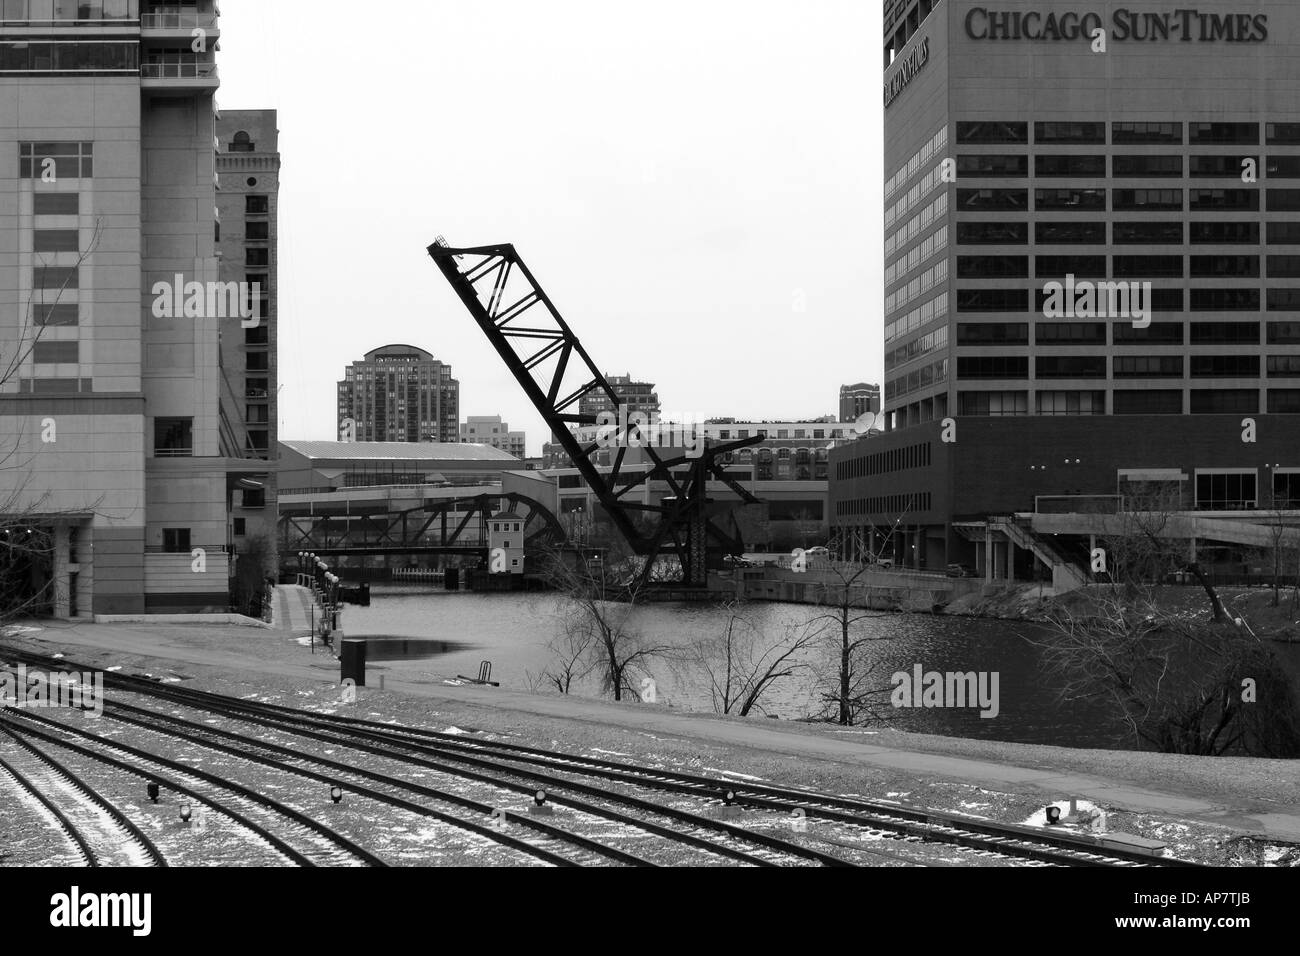 Kinzie Unentschieden Brücke und Chicago Sonne mal Gebäude in der Nähe von Chicago downtown p Schlüsselwörter Kinzie zeichnen überbrücken Chicago Loop Innenstadt chic Stockfoto